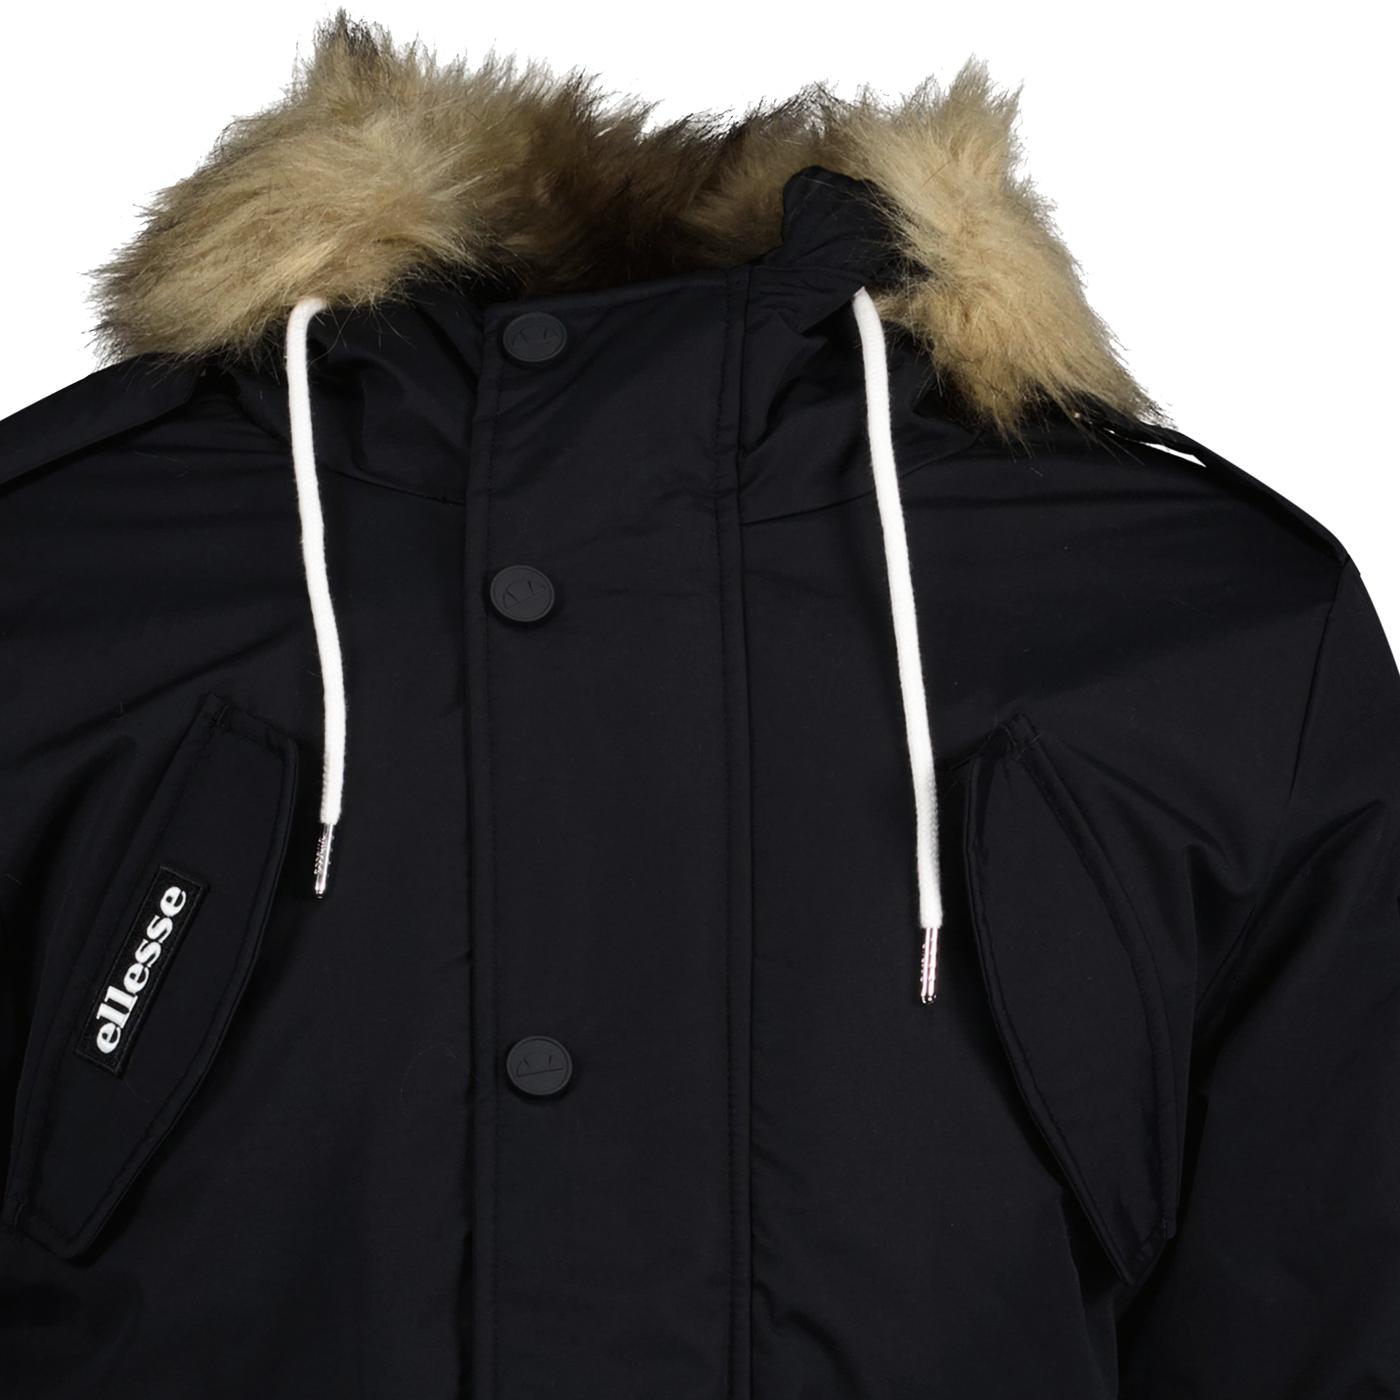 ELLESSE Blizzard Retro 90s Fleece Lined Parka Jacket in Black